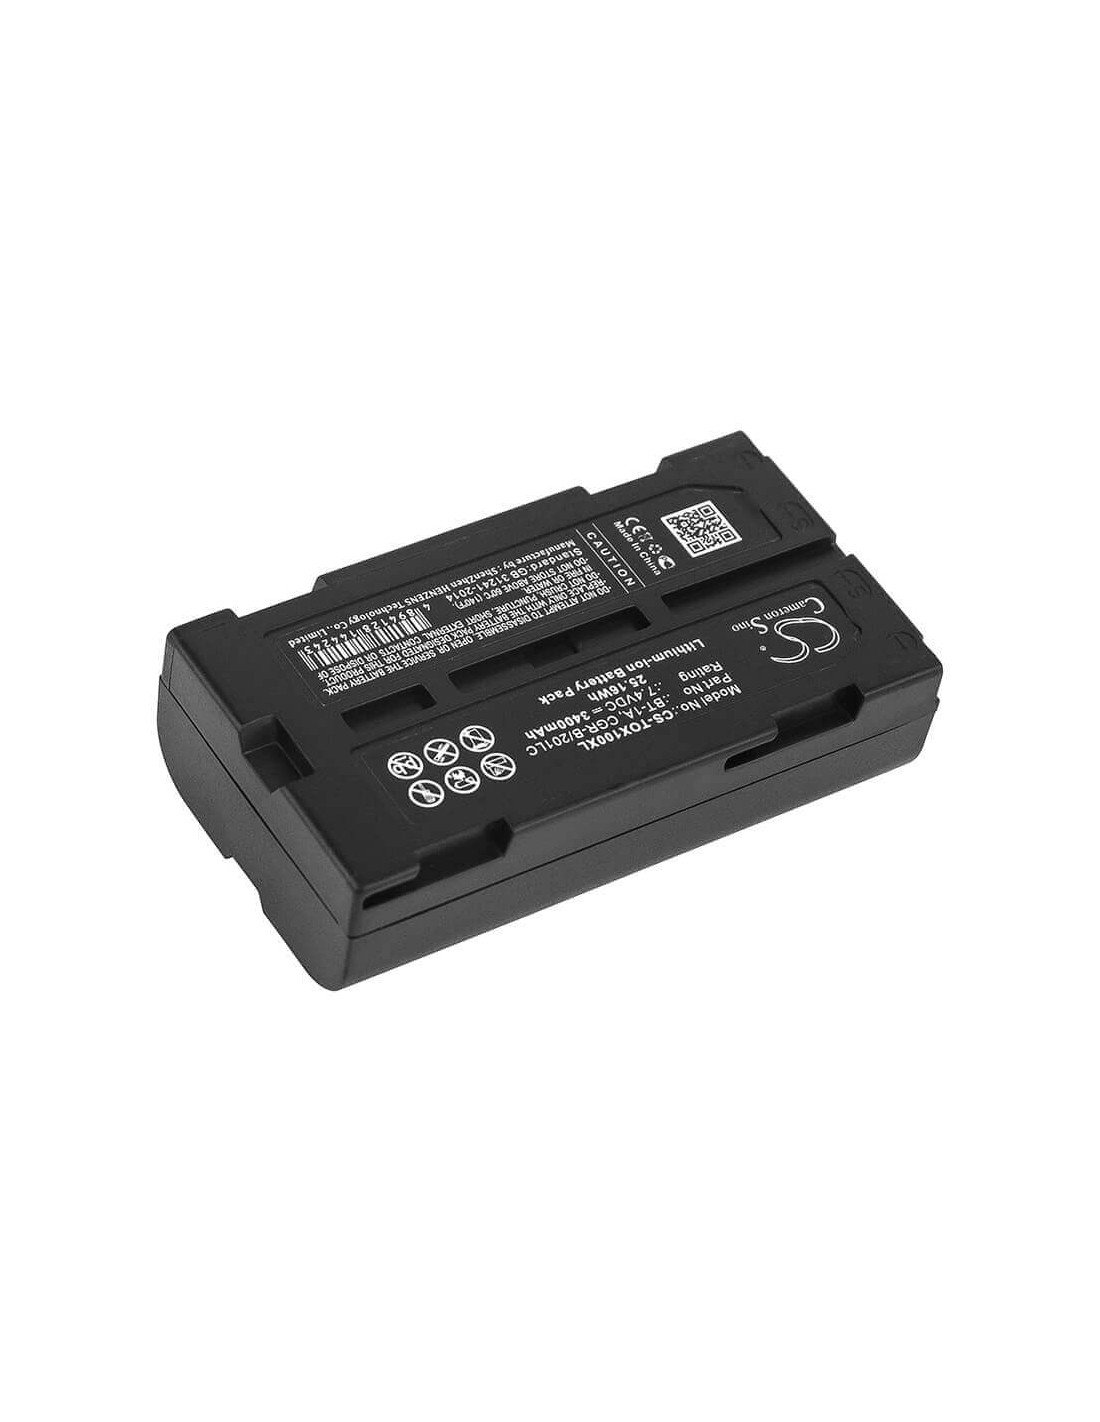 Battery for Topcon, Gp-sx1, Sx-1 7.4V, 3400mAh - 25.16Wh